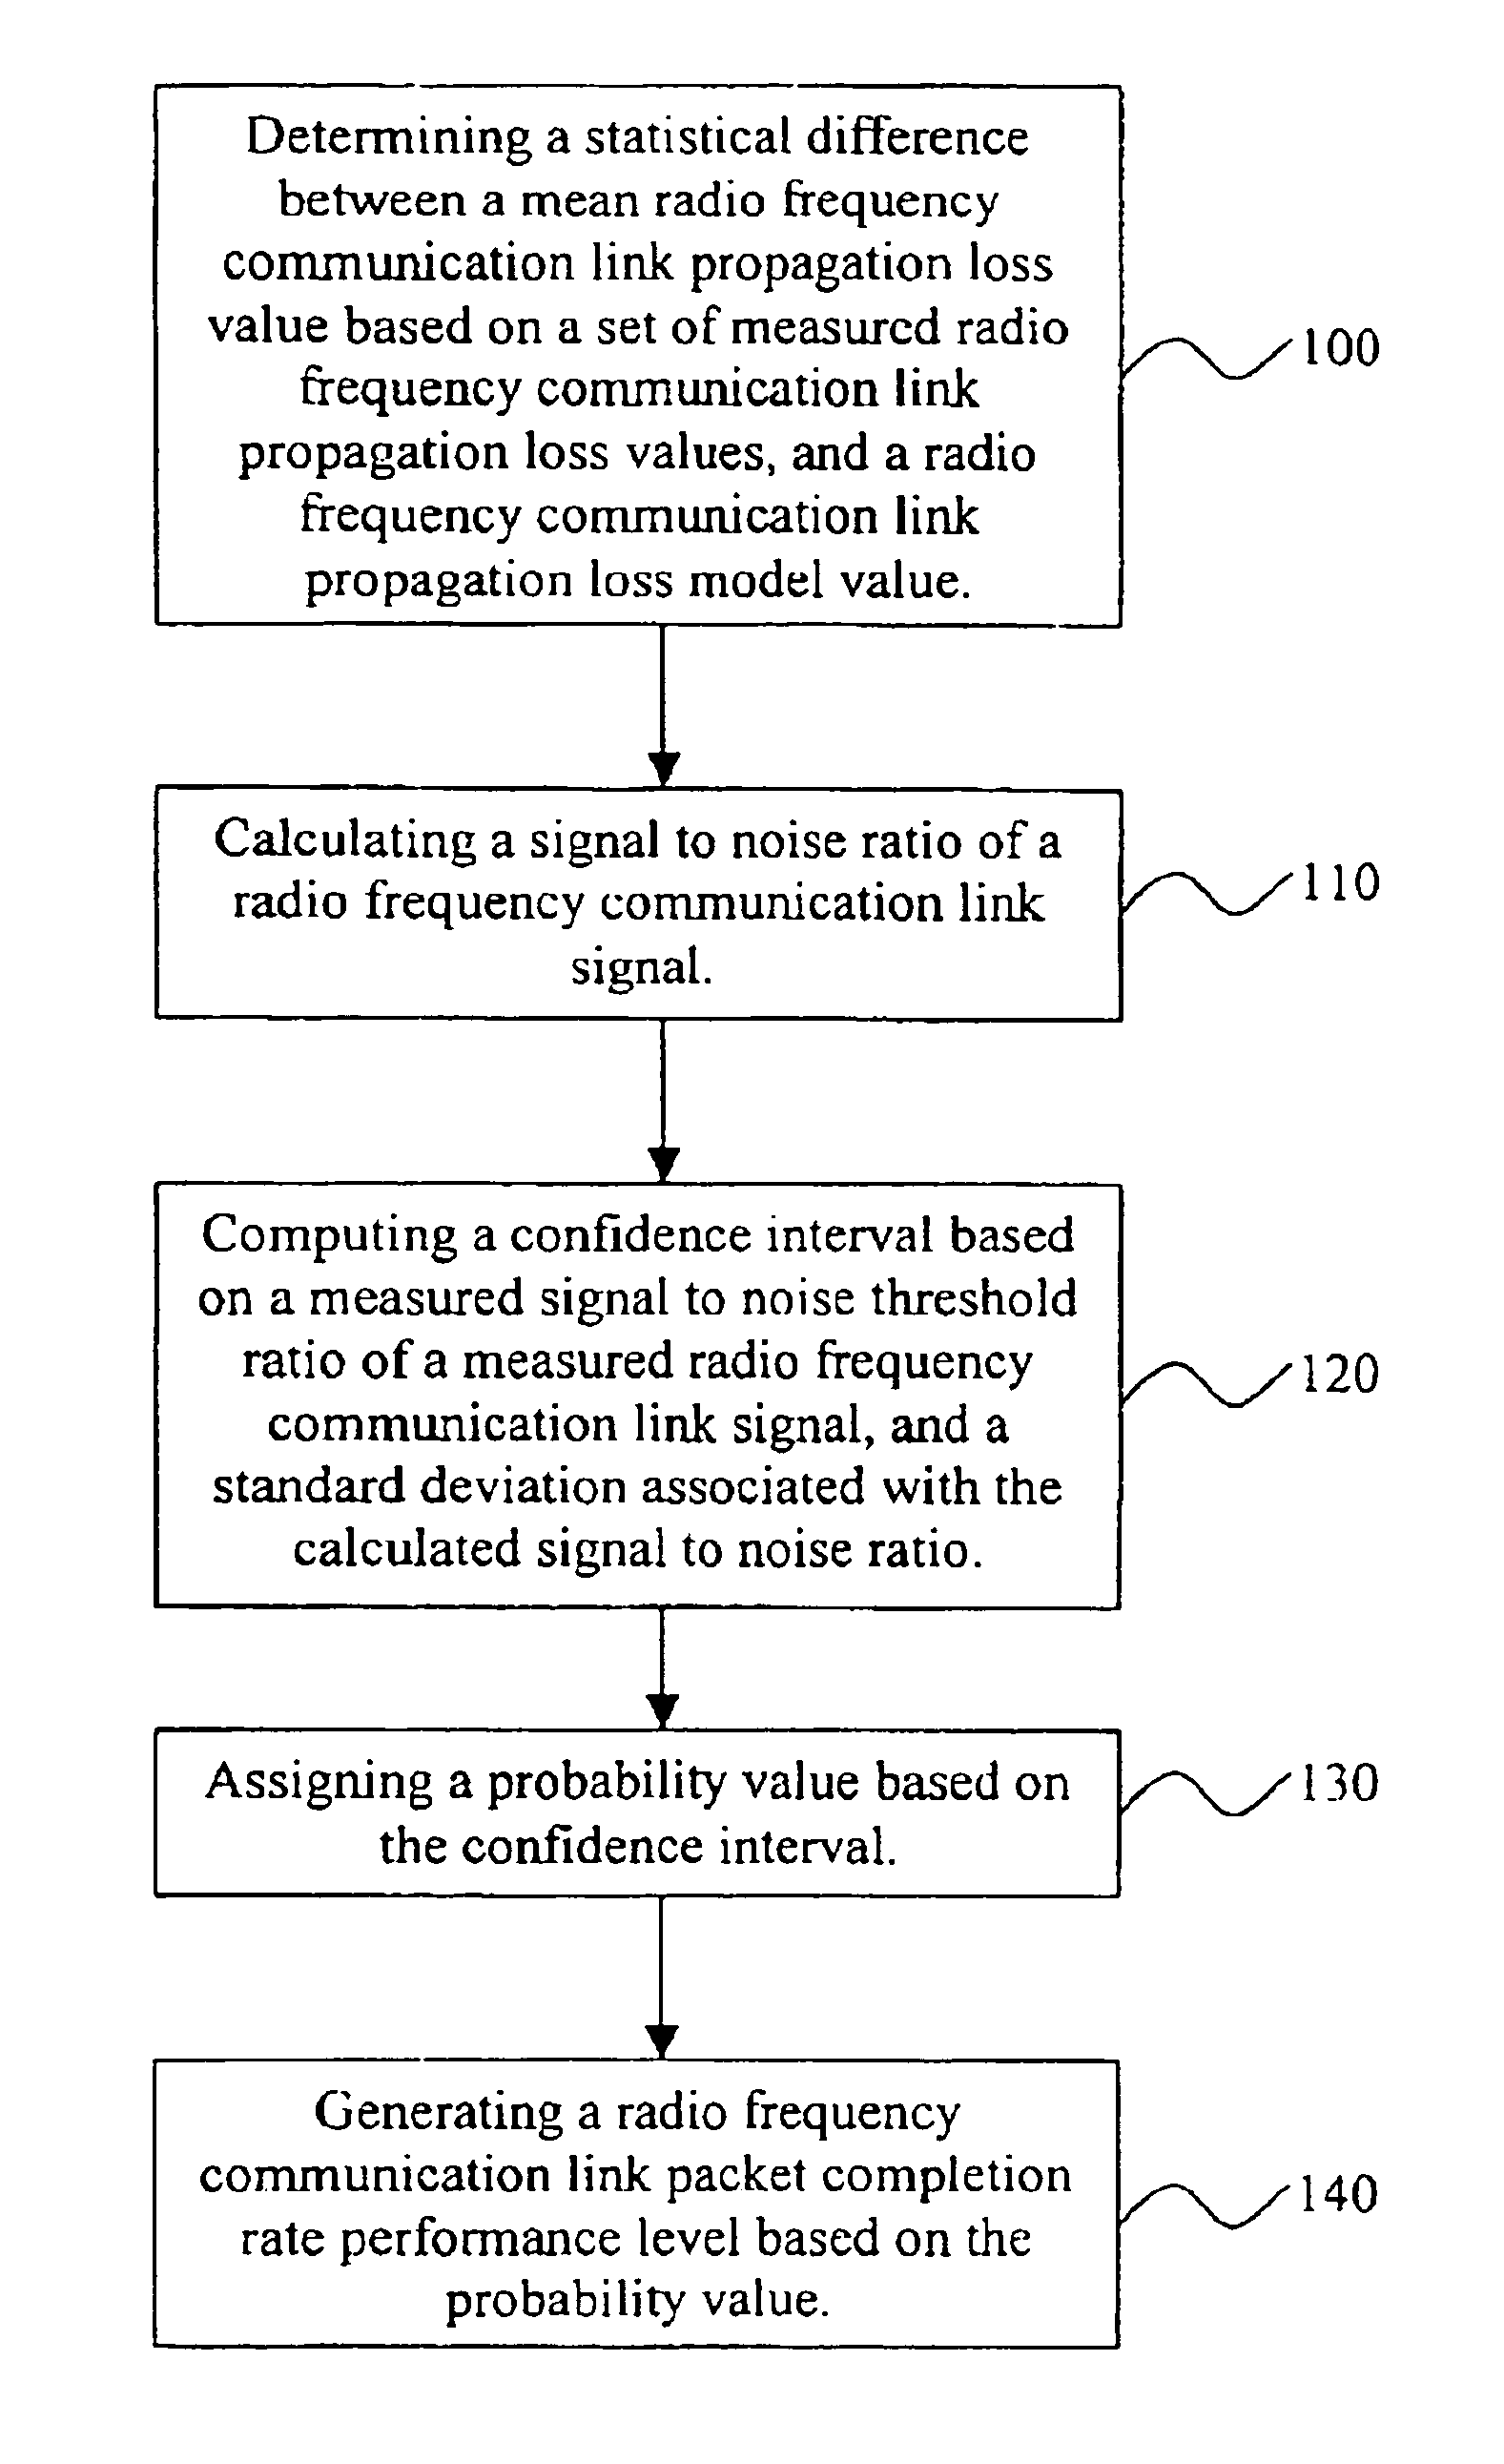 Communication network optimization tool